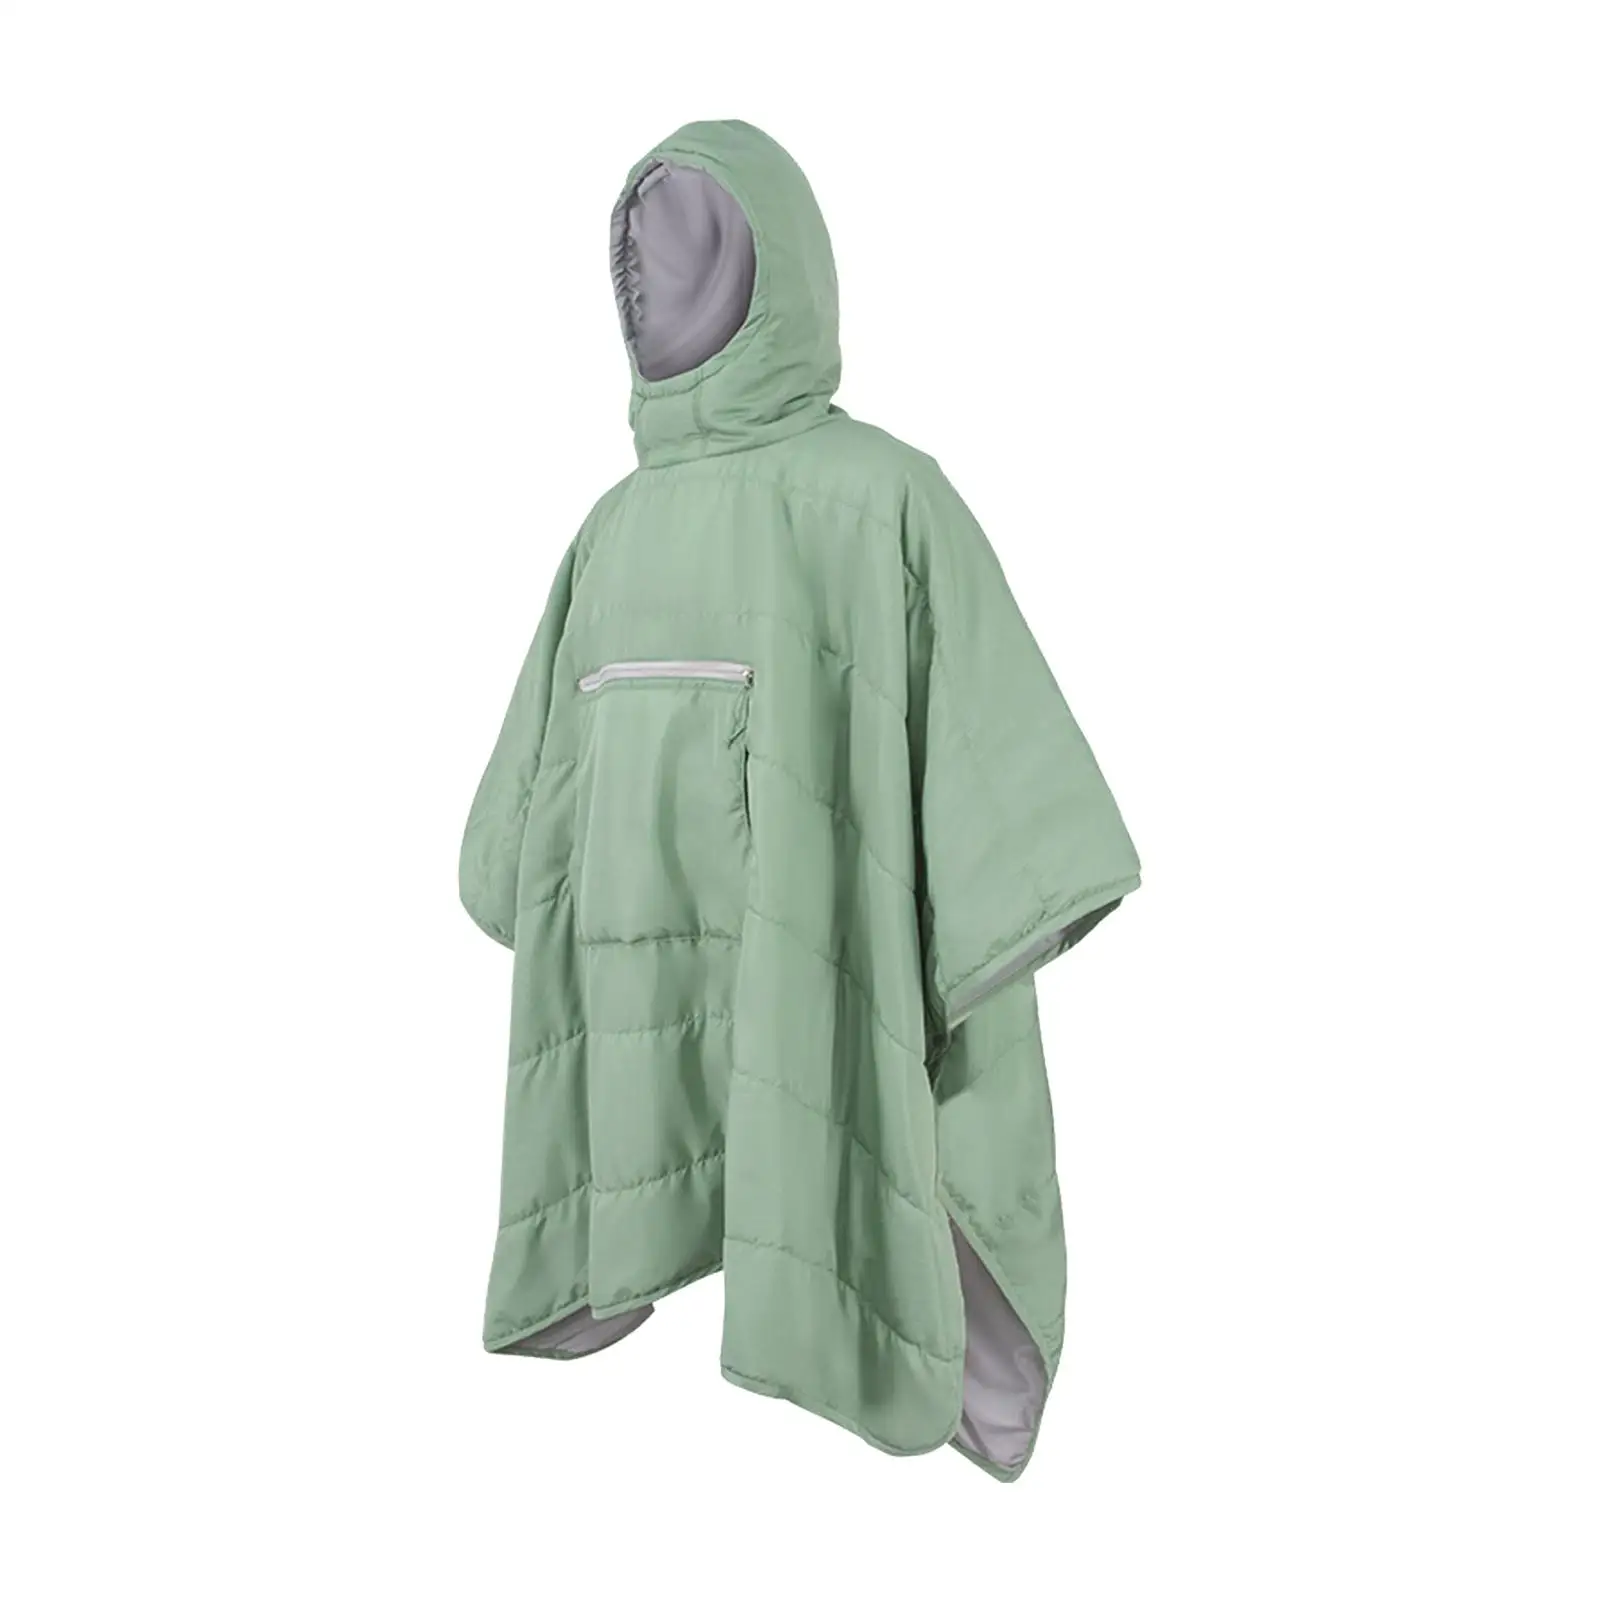 Sleeping Bag Cloak Hammock Hooded Blanket Warm for Hiking Beach Backpacking